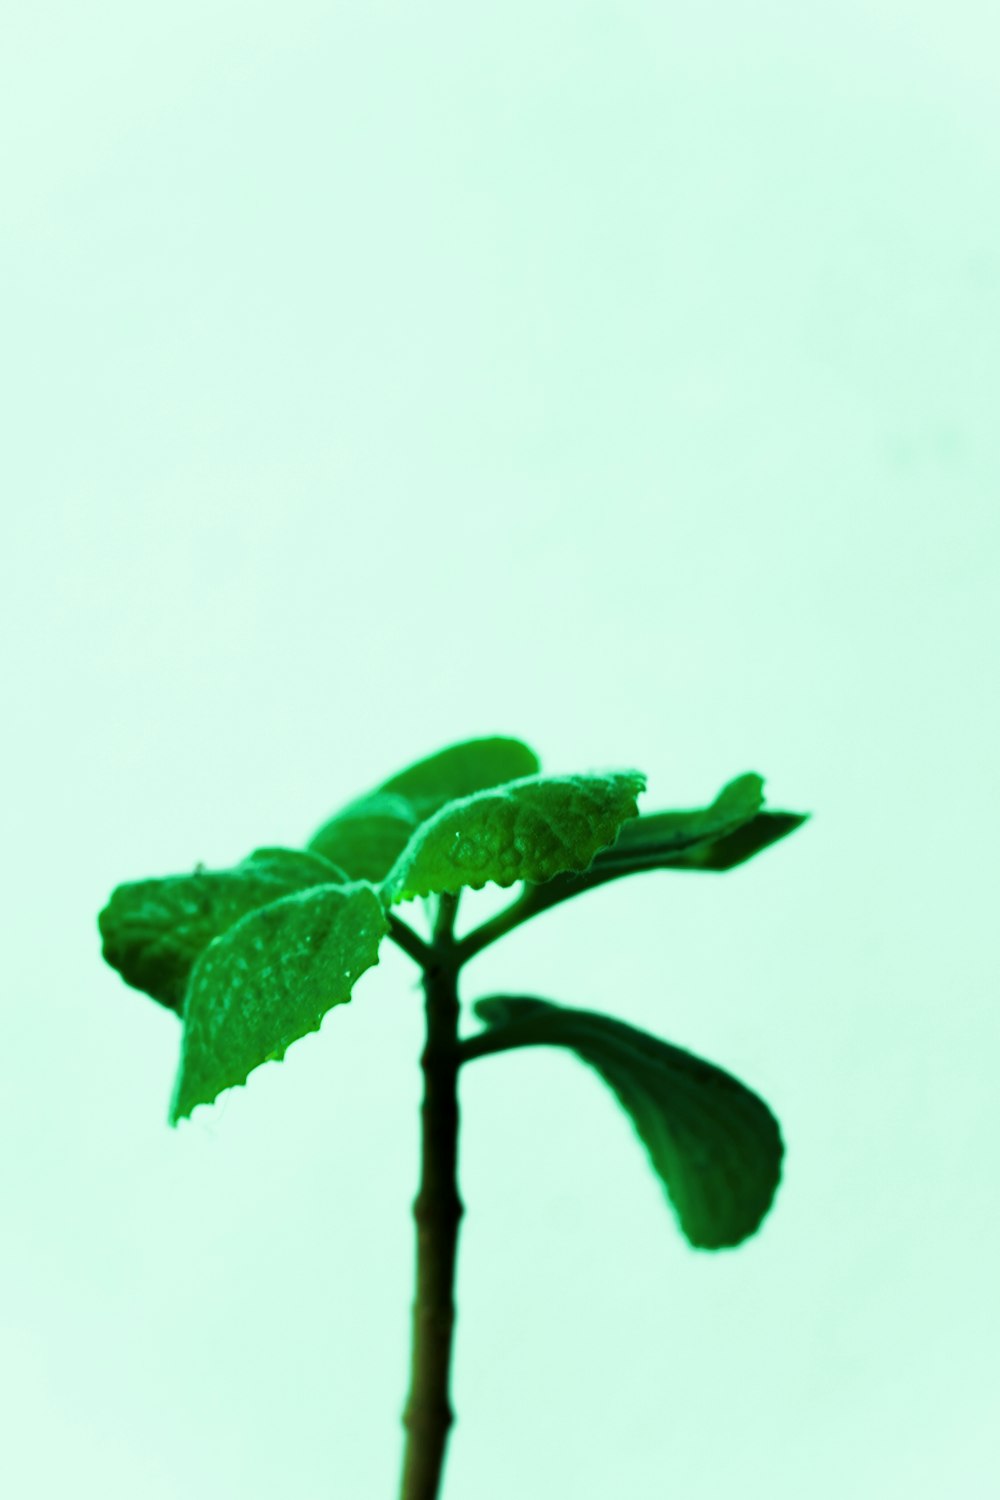 eine kleine grüne Pflanze mit Blättern darauf